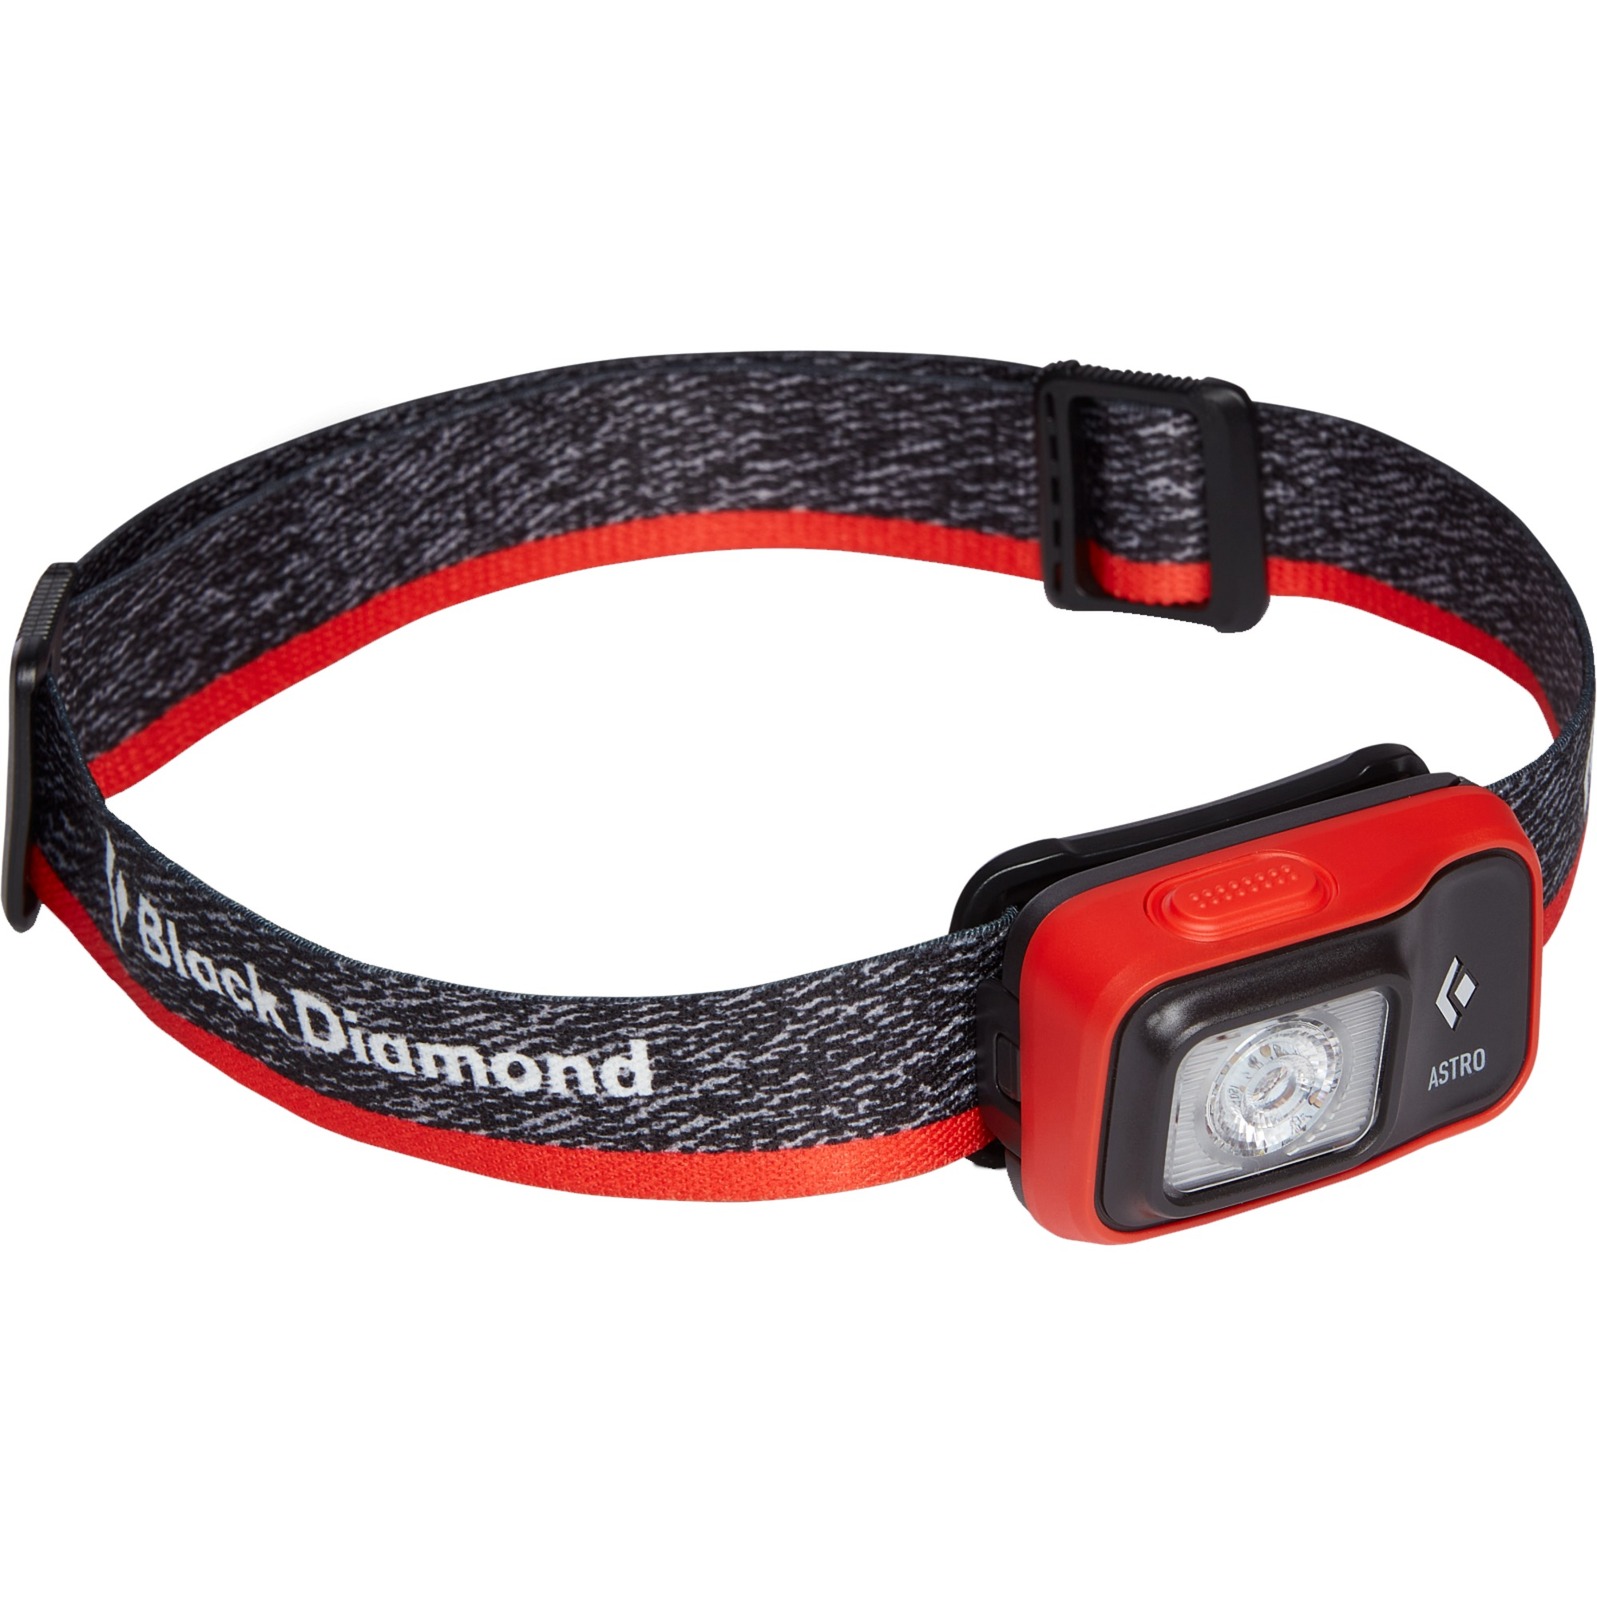 Stirnlampe Astro 300, LED-Leuchte von Black Diamond